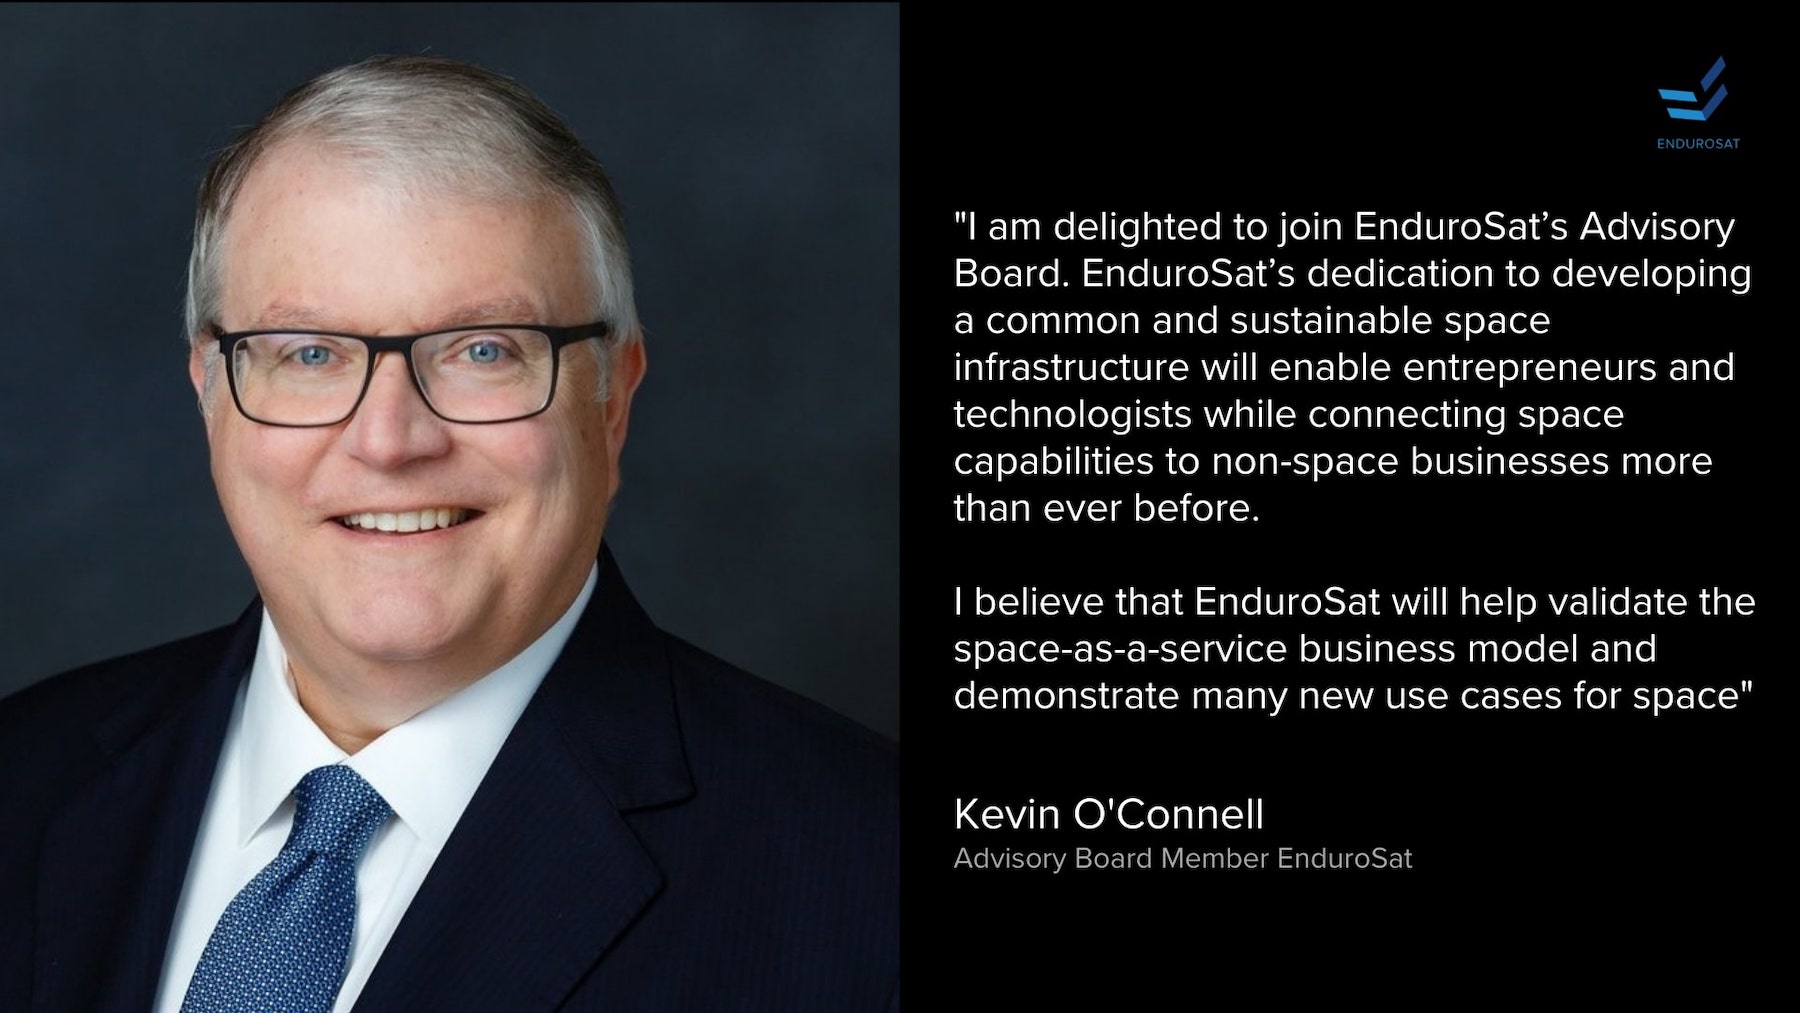 Kevin OConnel joined endurosat advisory board member